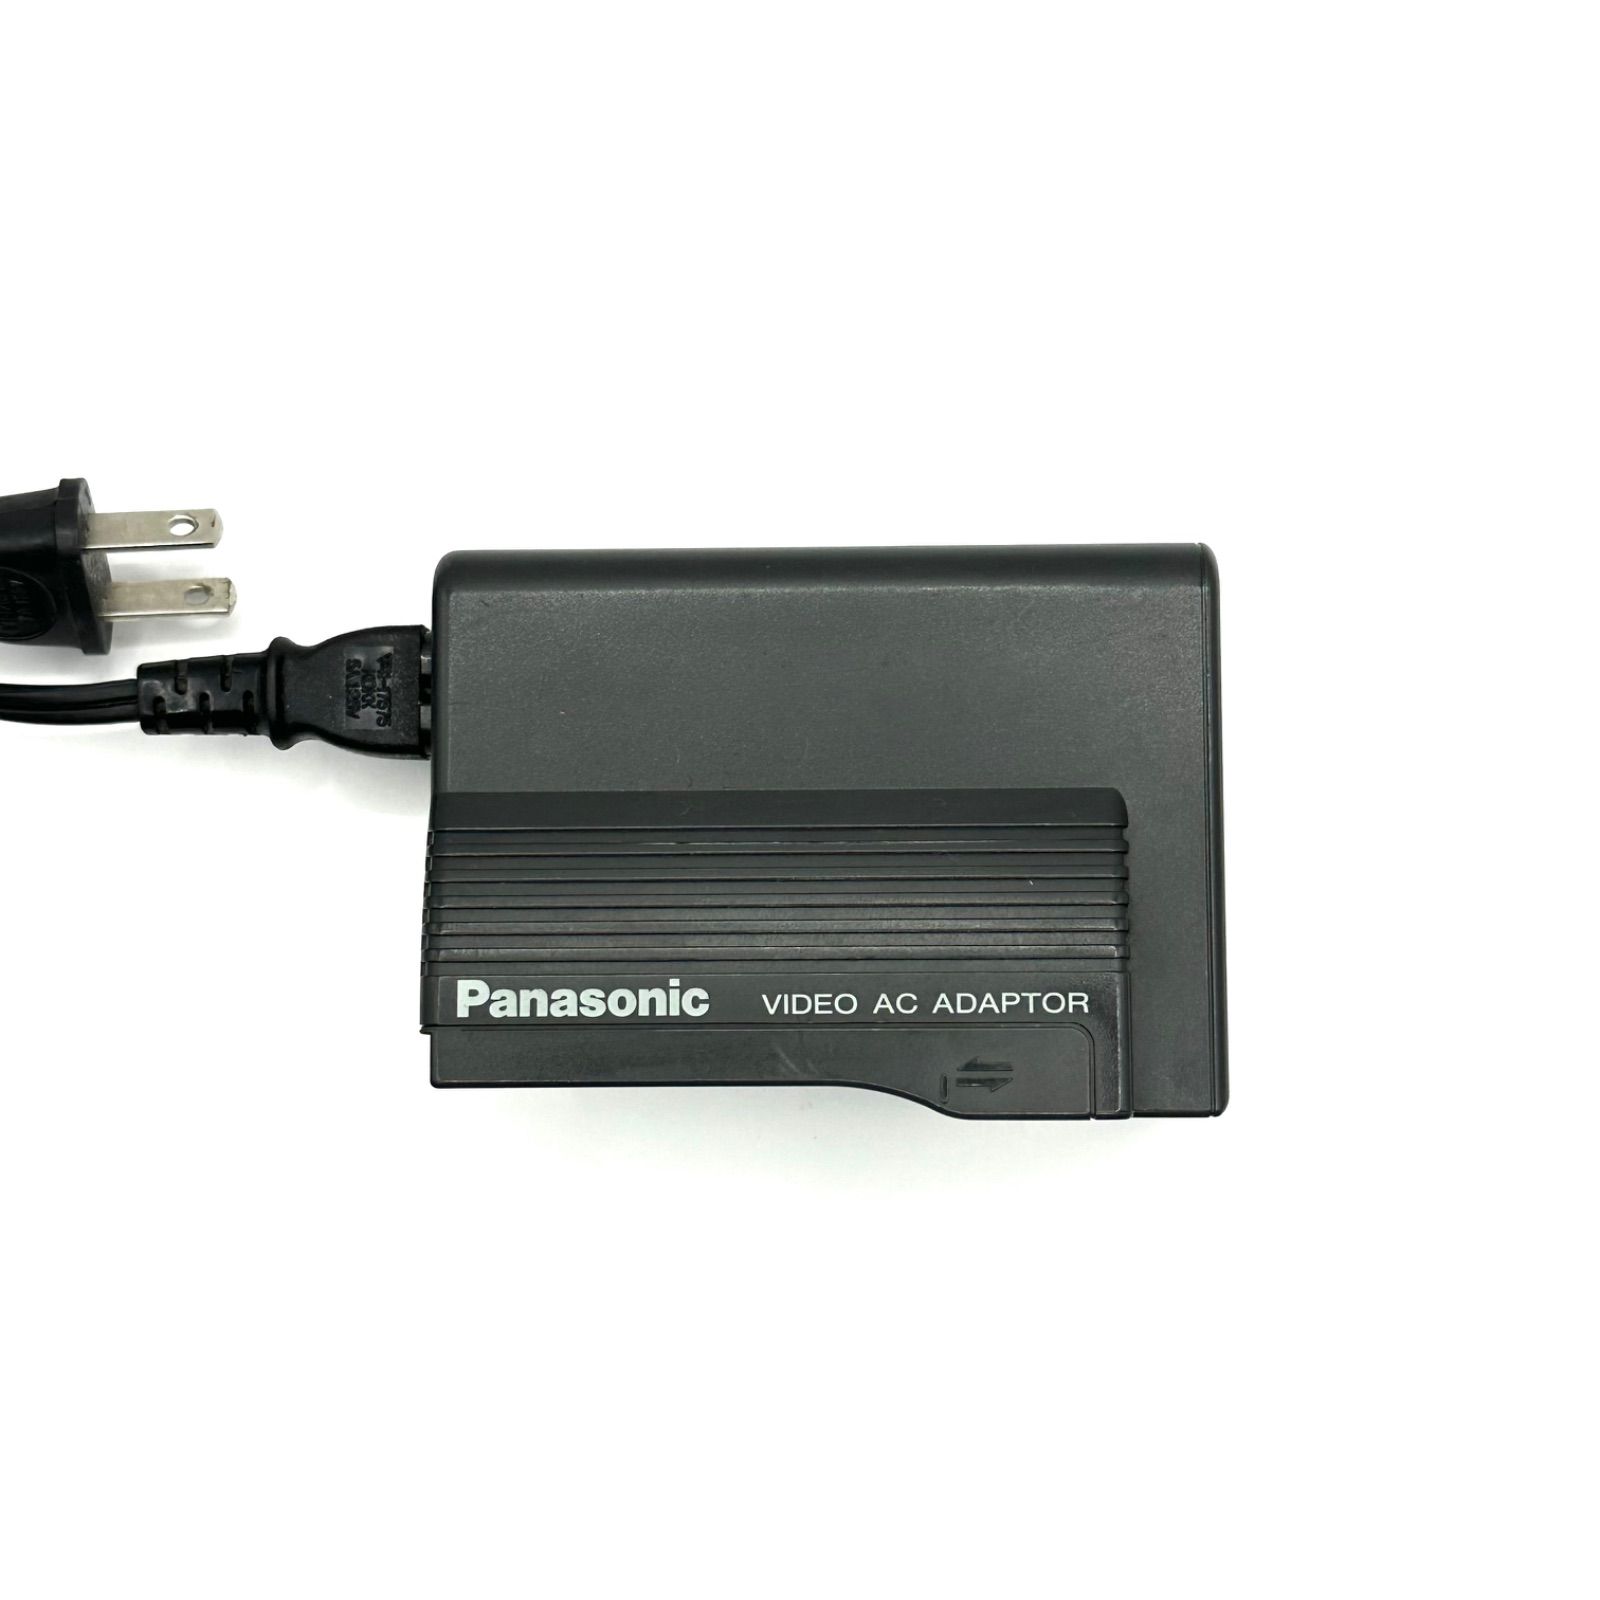 Panasonic 【訳あり大特価】PANASONIC パナソニック VIDEO AC ADAPTOR VW-AS3 #4836